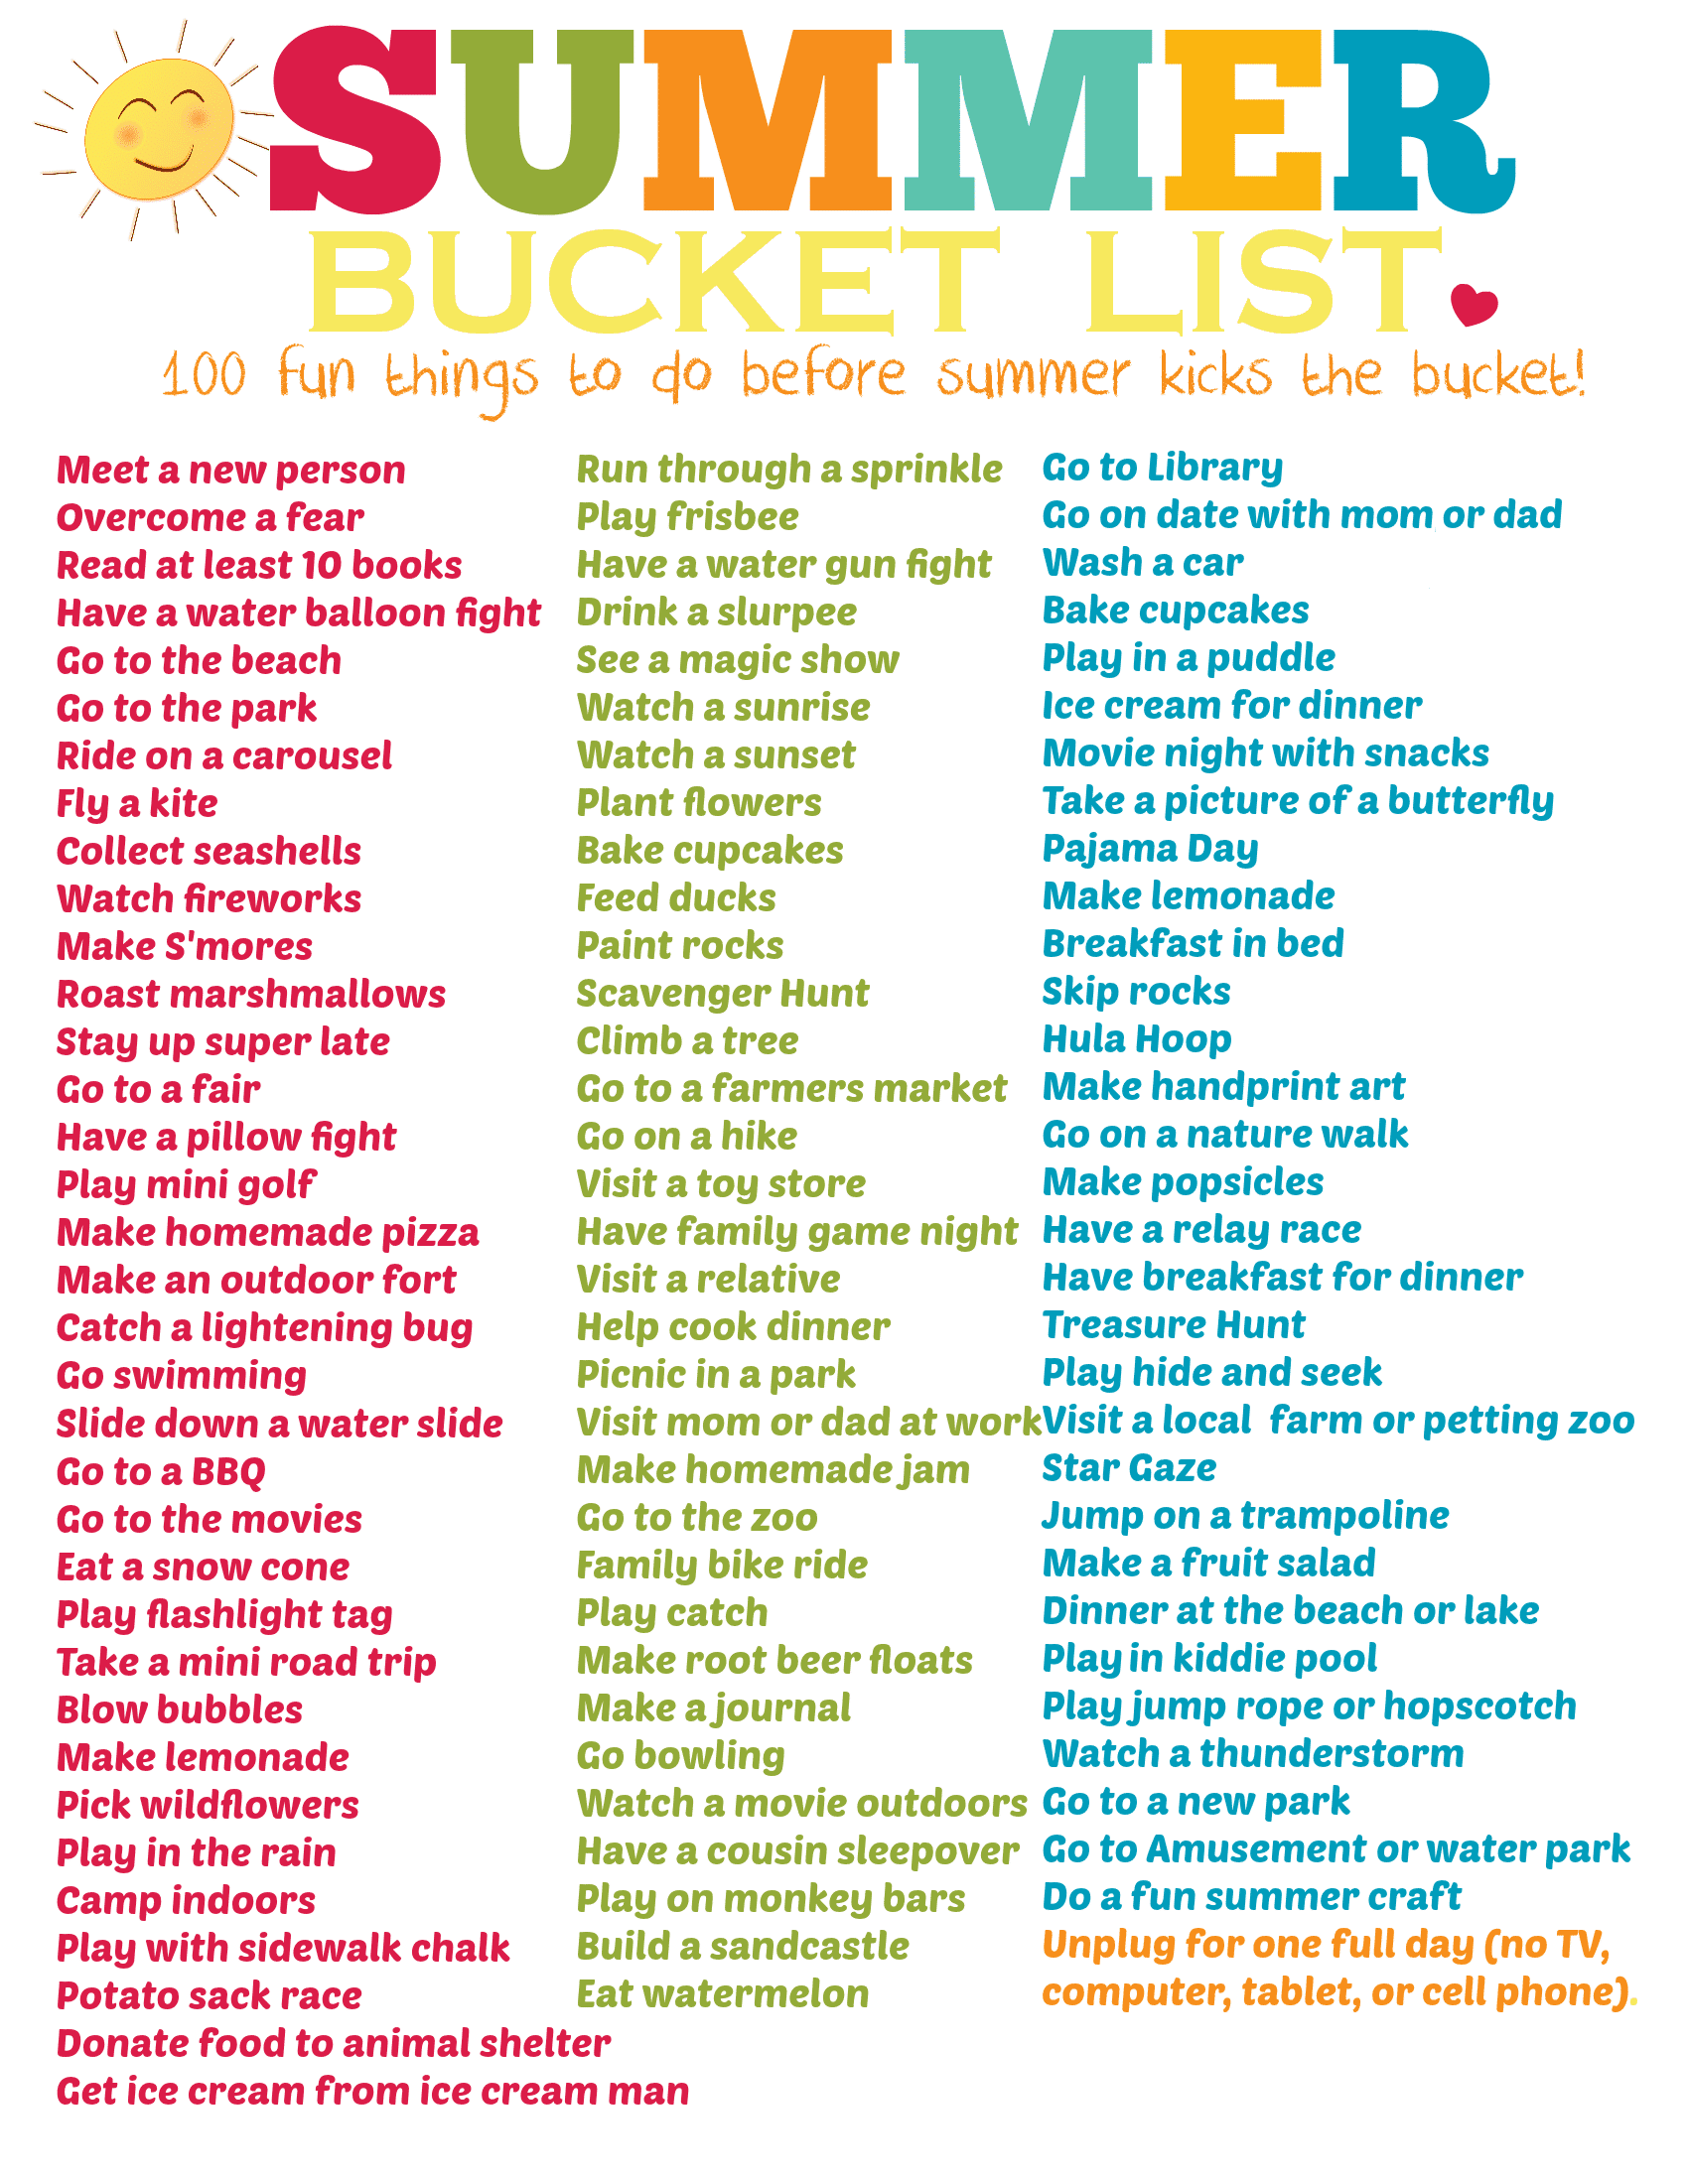 Summer Bucket List Final Image